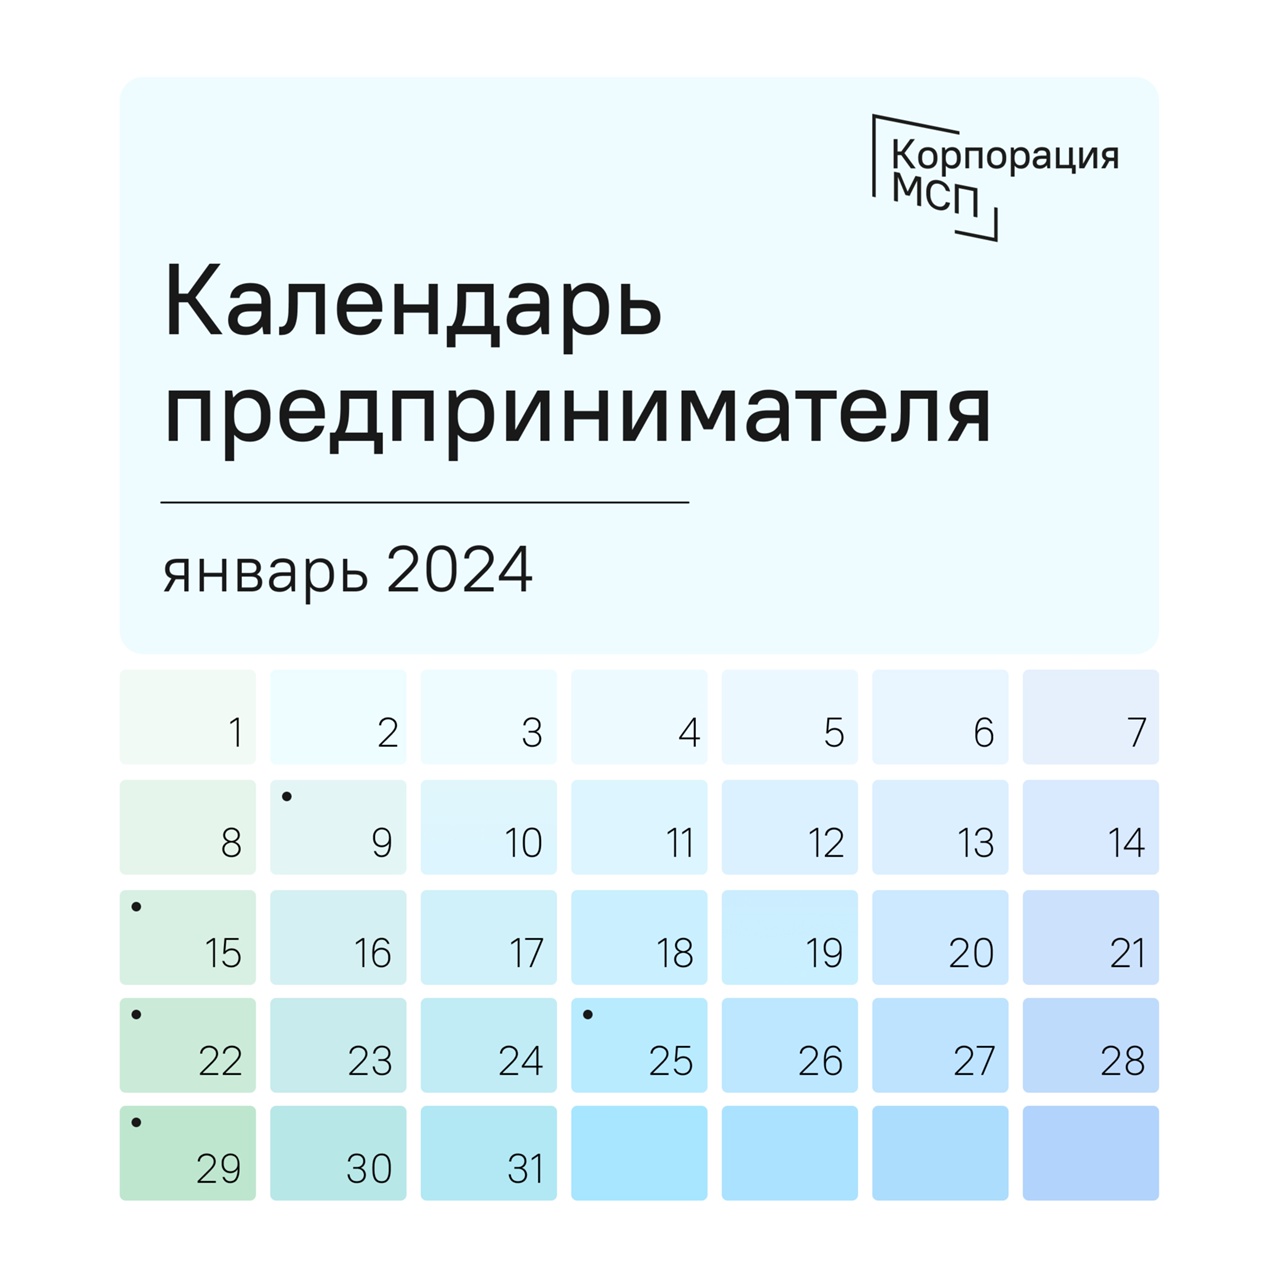 Календарь предпринимателя на январь 2024 года.